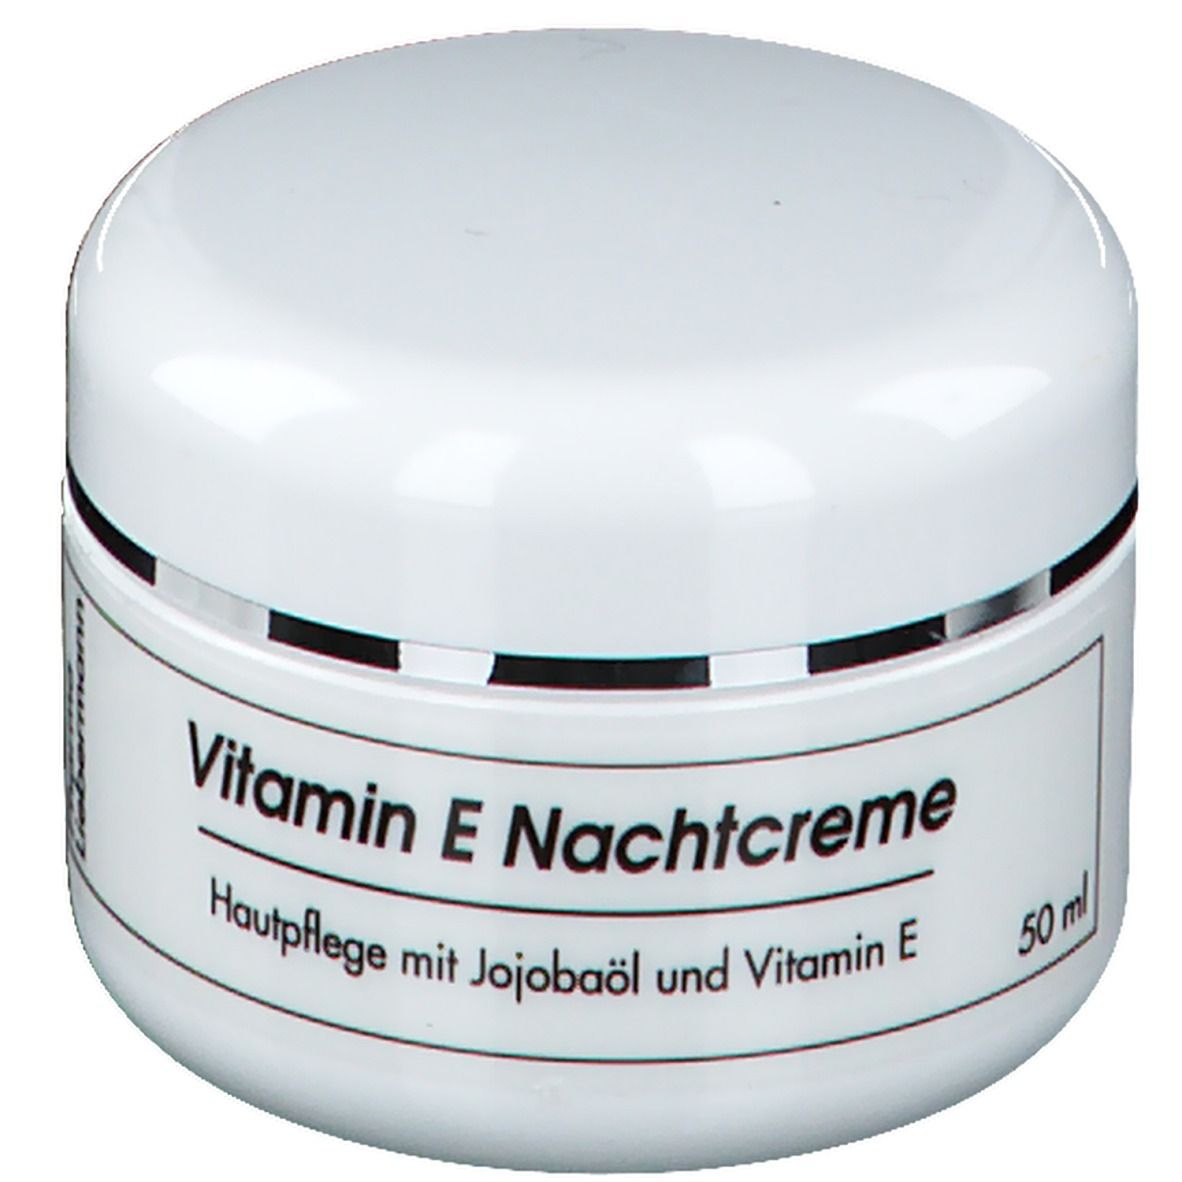 Vitamin E Nachtcreme